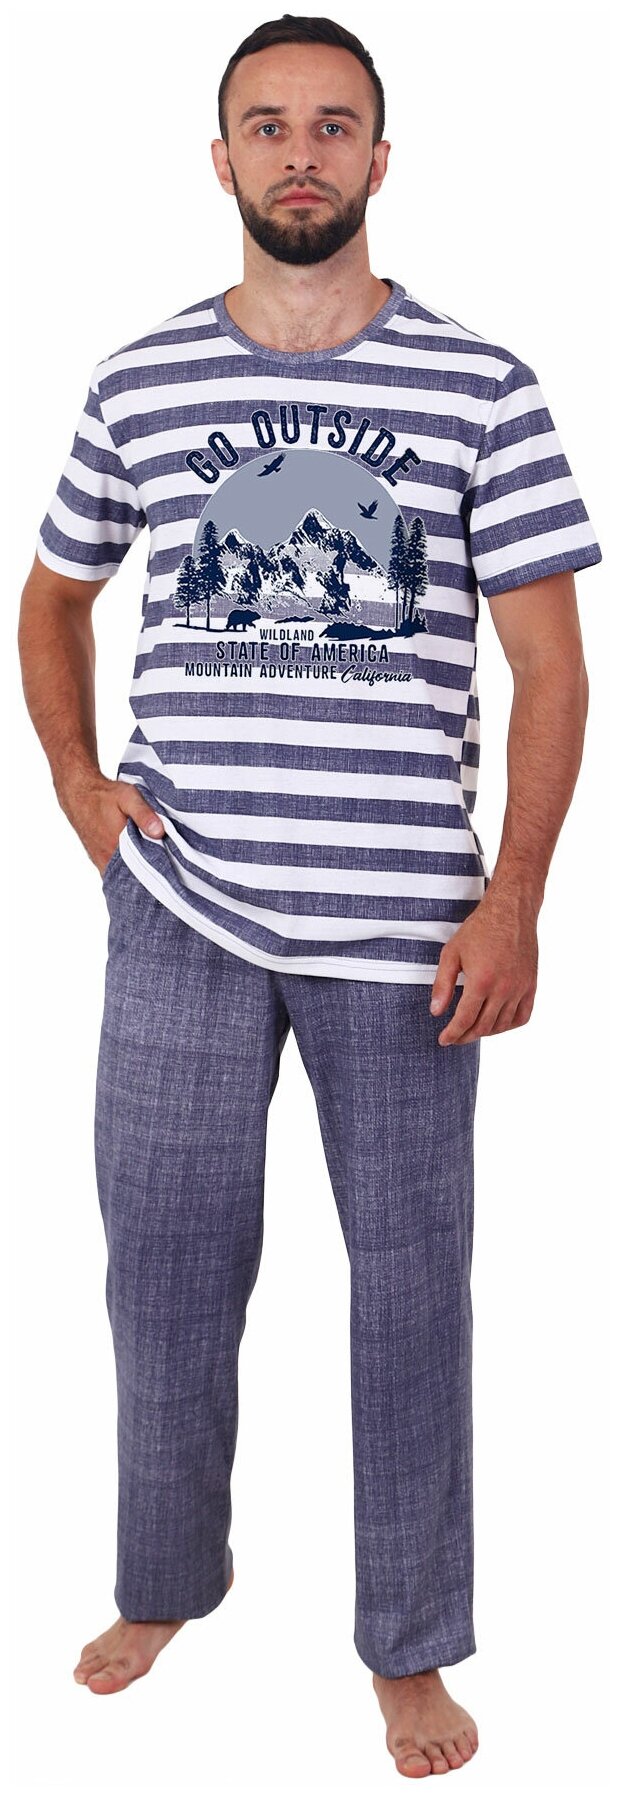 Мужская пижама Вояж Синий размер 58 Кулирка Оптима трикотаж футболка в полоску с коротким рукавом брюки с карманами - фотография № 1